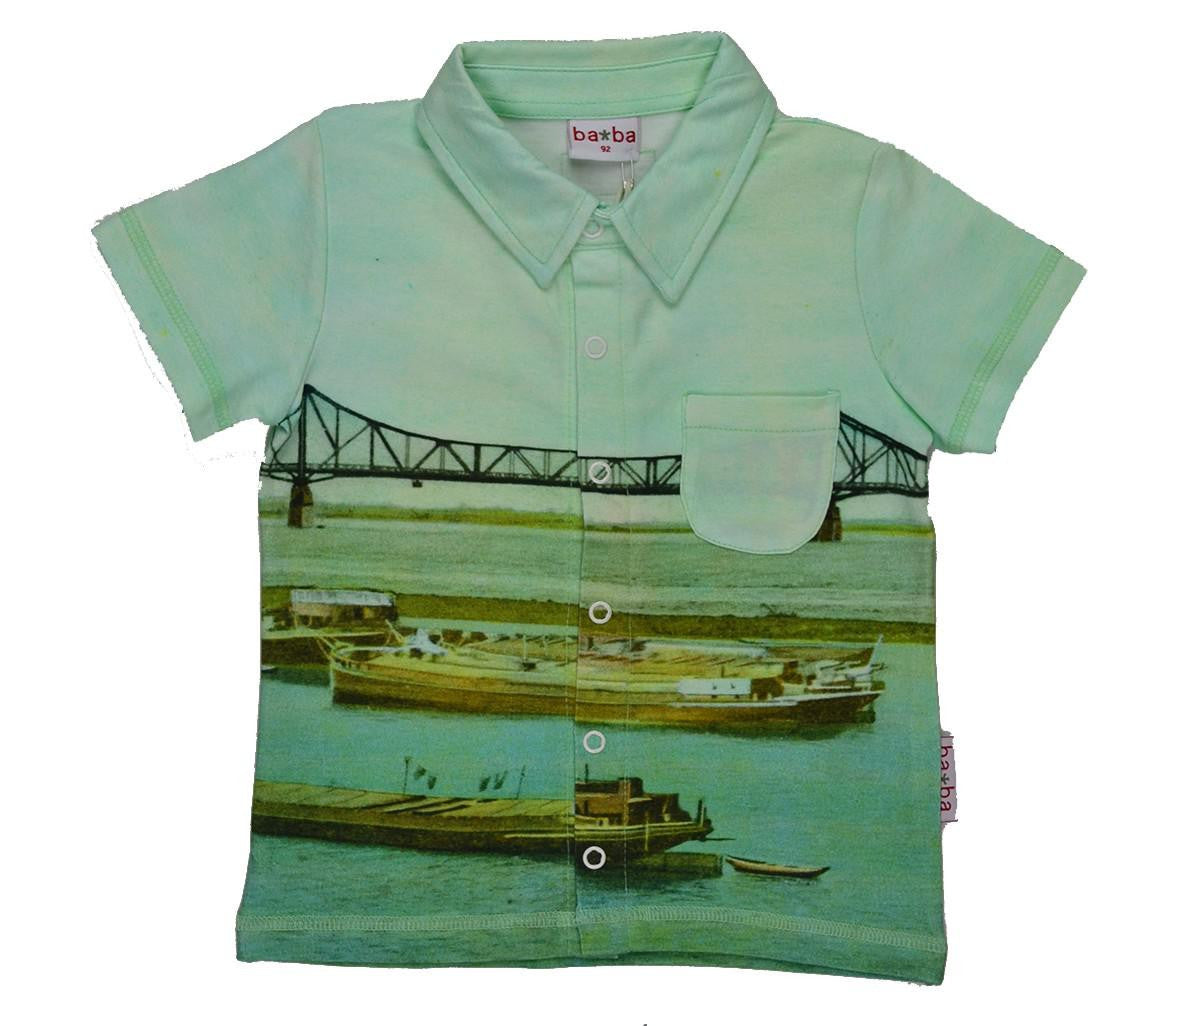 Baba Kidswear - T-Shirt POLO Boat and Bridge